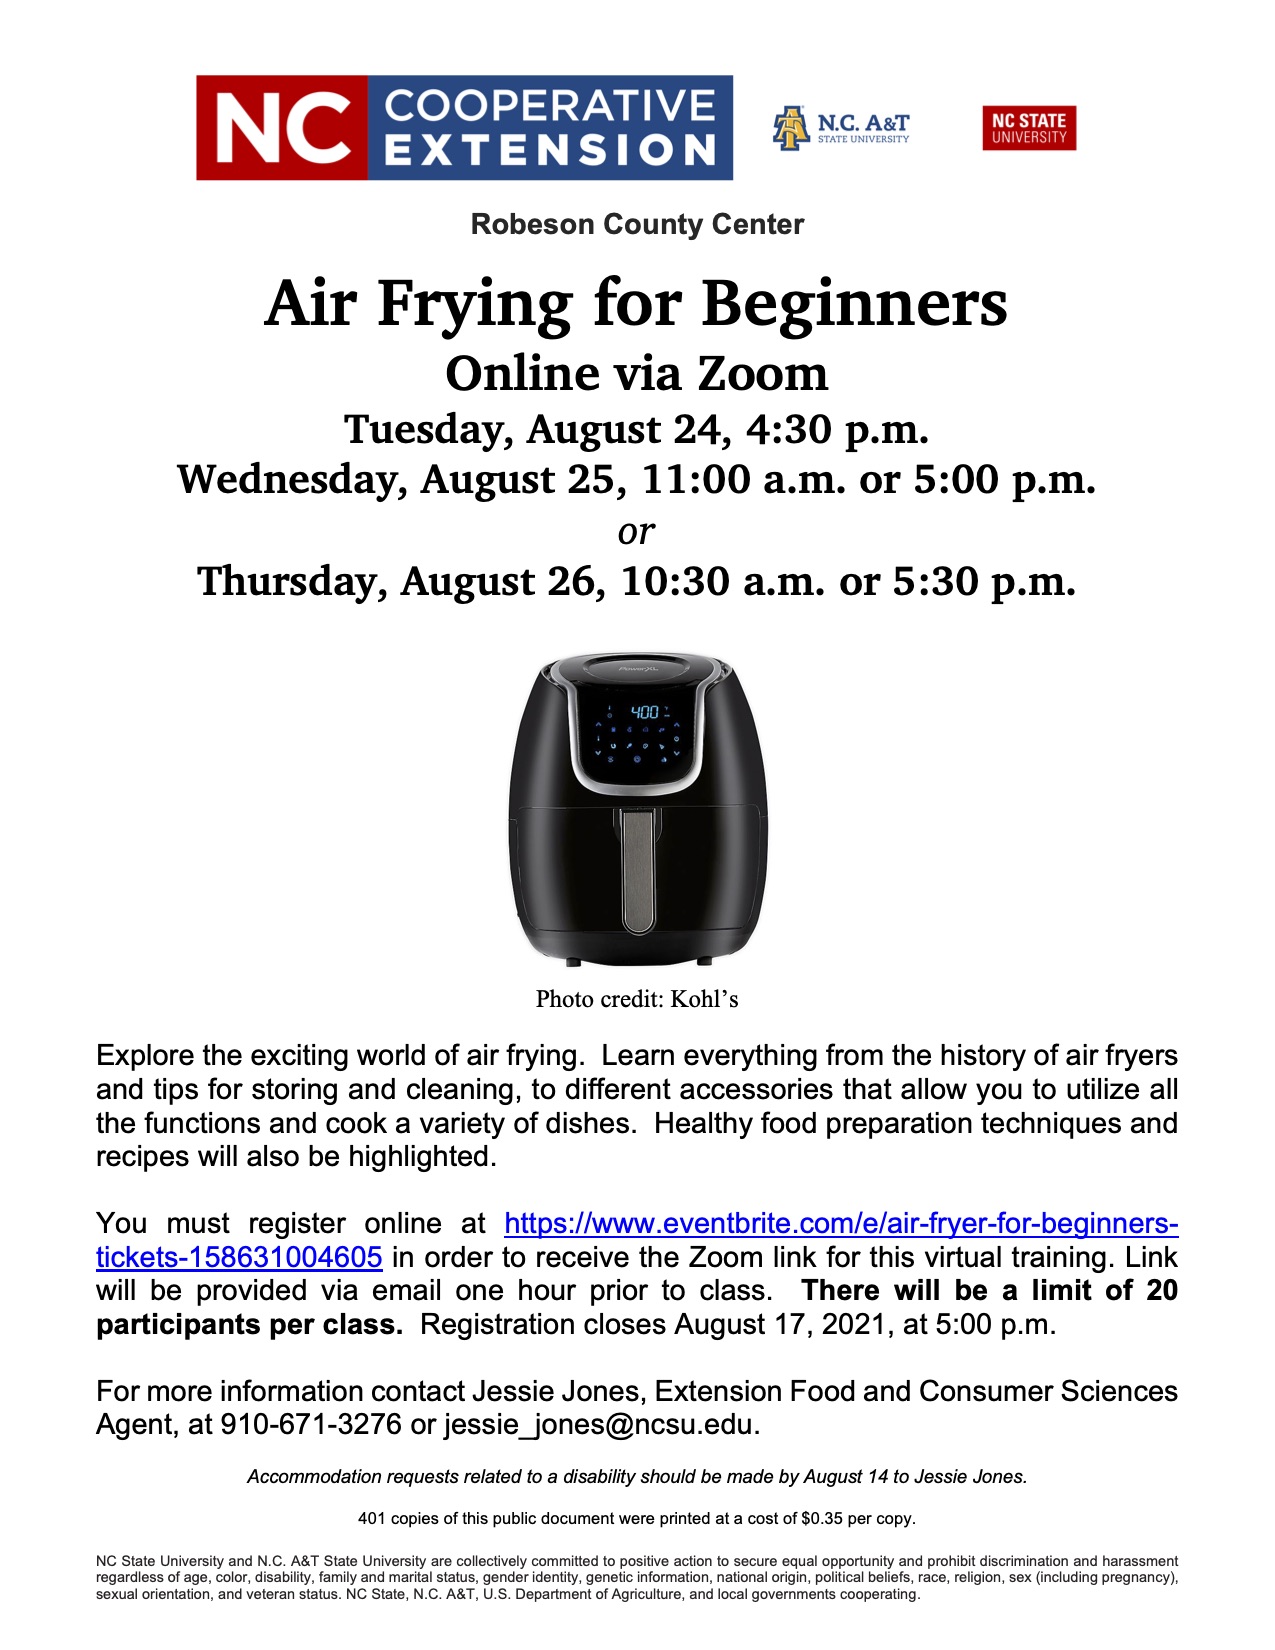 Air Fryer Class Flier